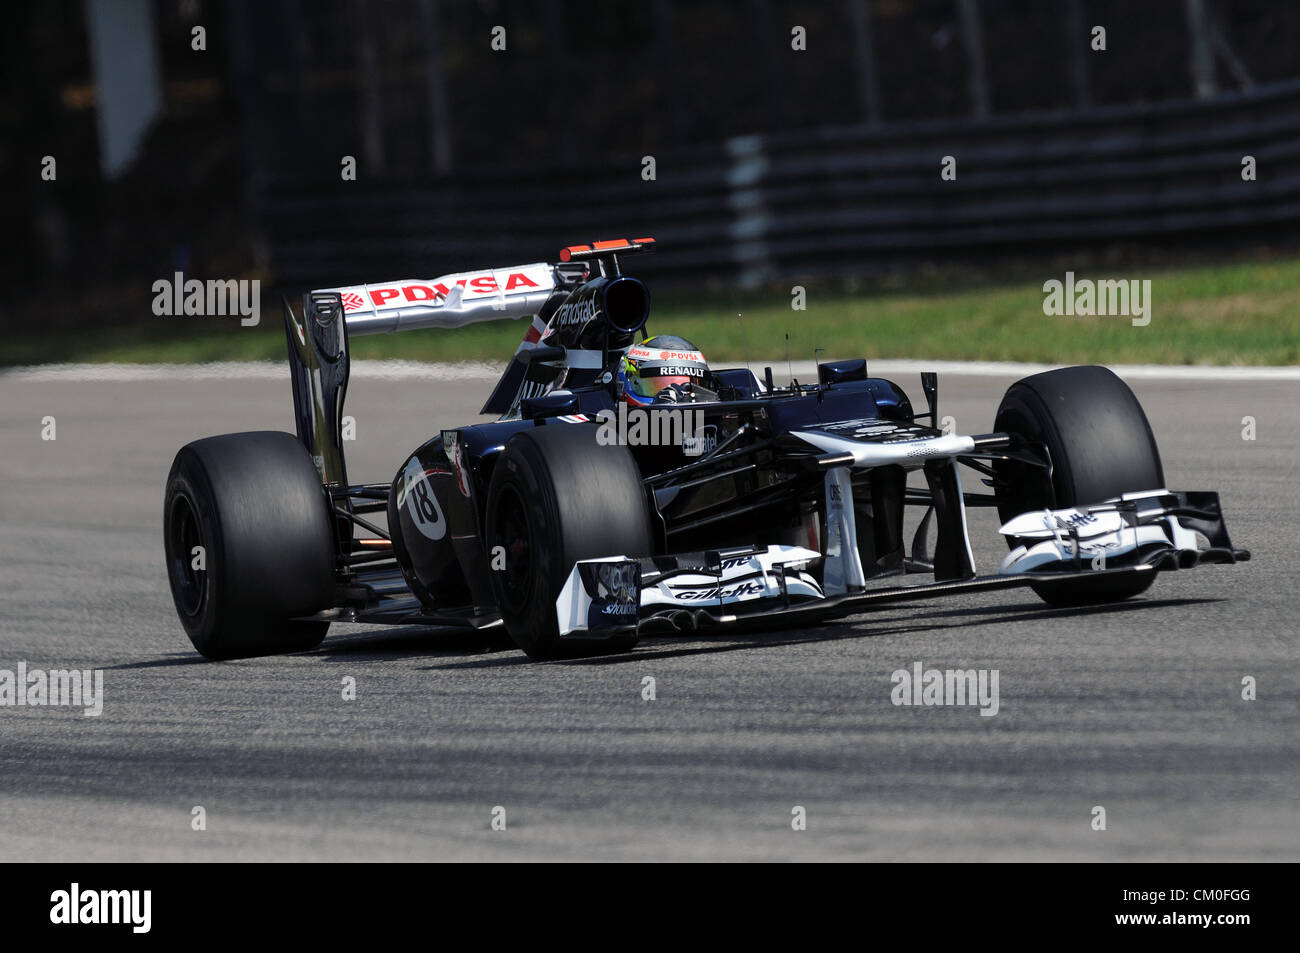 Monza, Italie. 8 septembre 2012. Pastor Maldonado de Williams en action lors de la journée de qualification GP d'Italie 2012. Banque D'Images